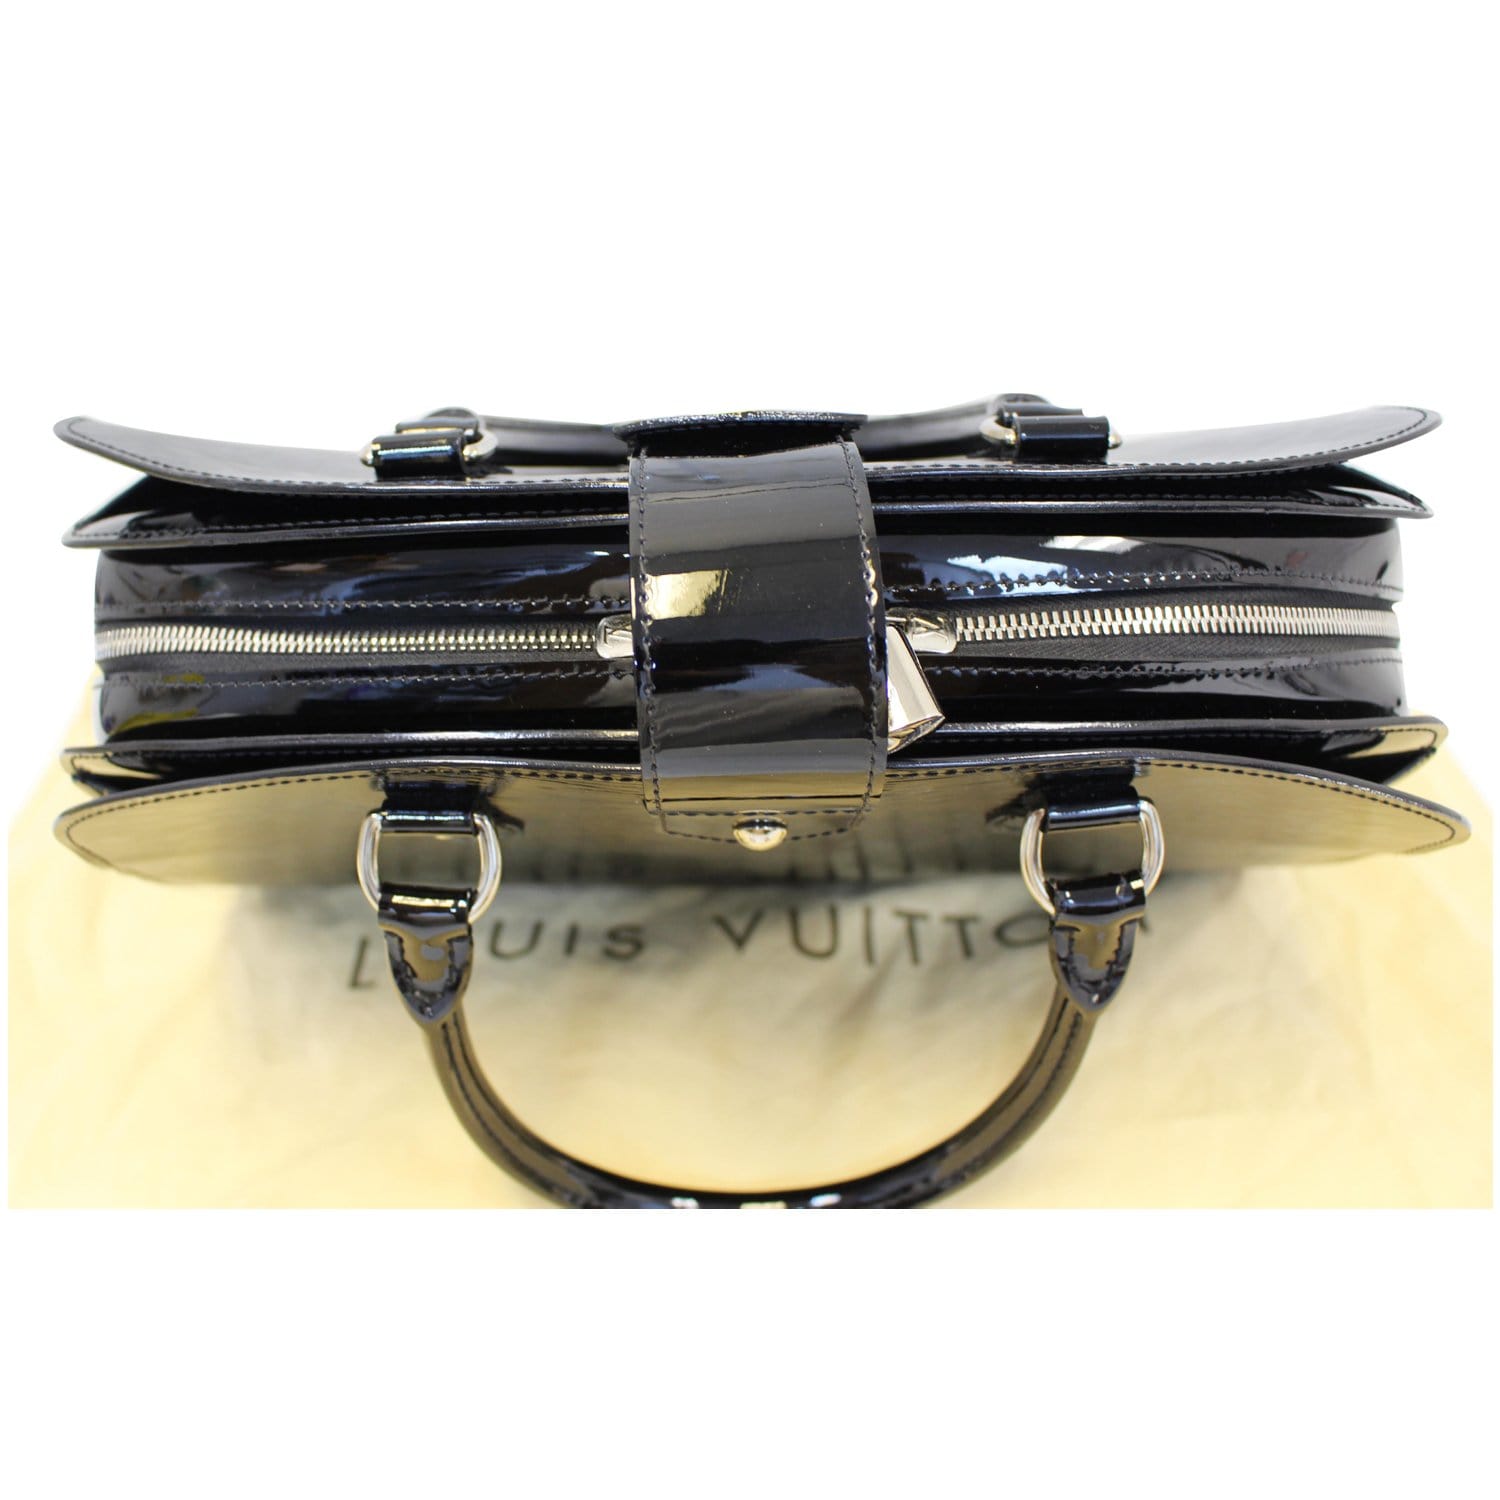 Louis Vuitton Black Epi Leather Pont-Neuf GM Handbag